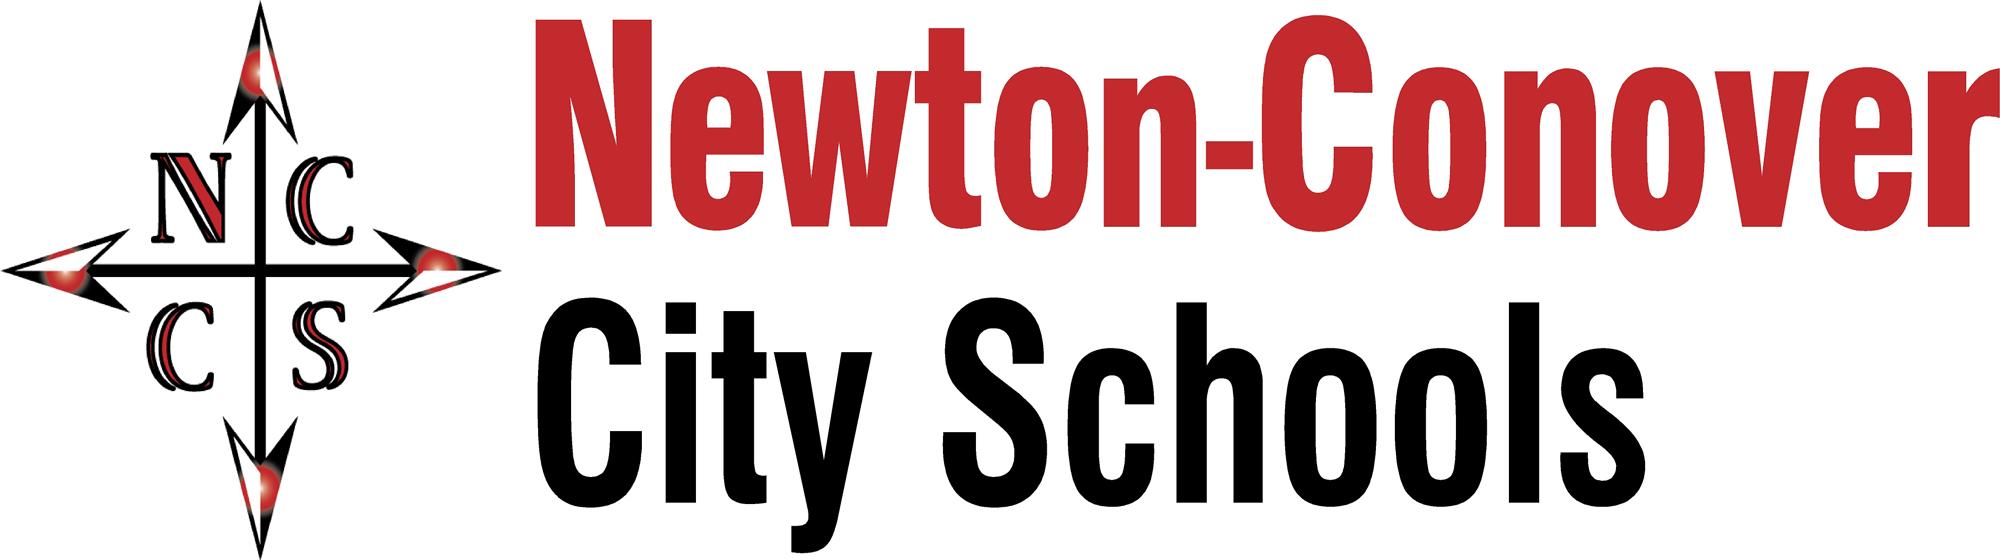 Newton-Conover City Schools logo